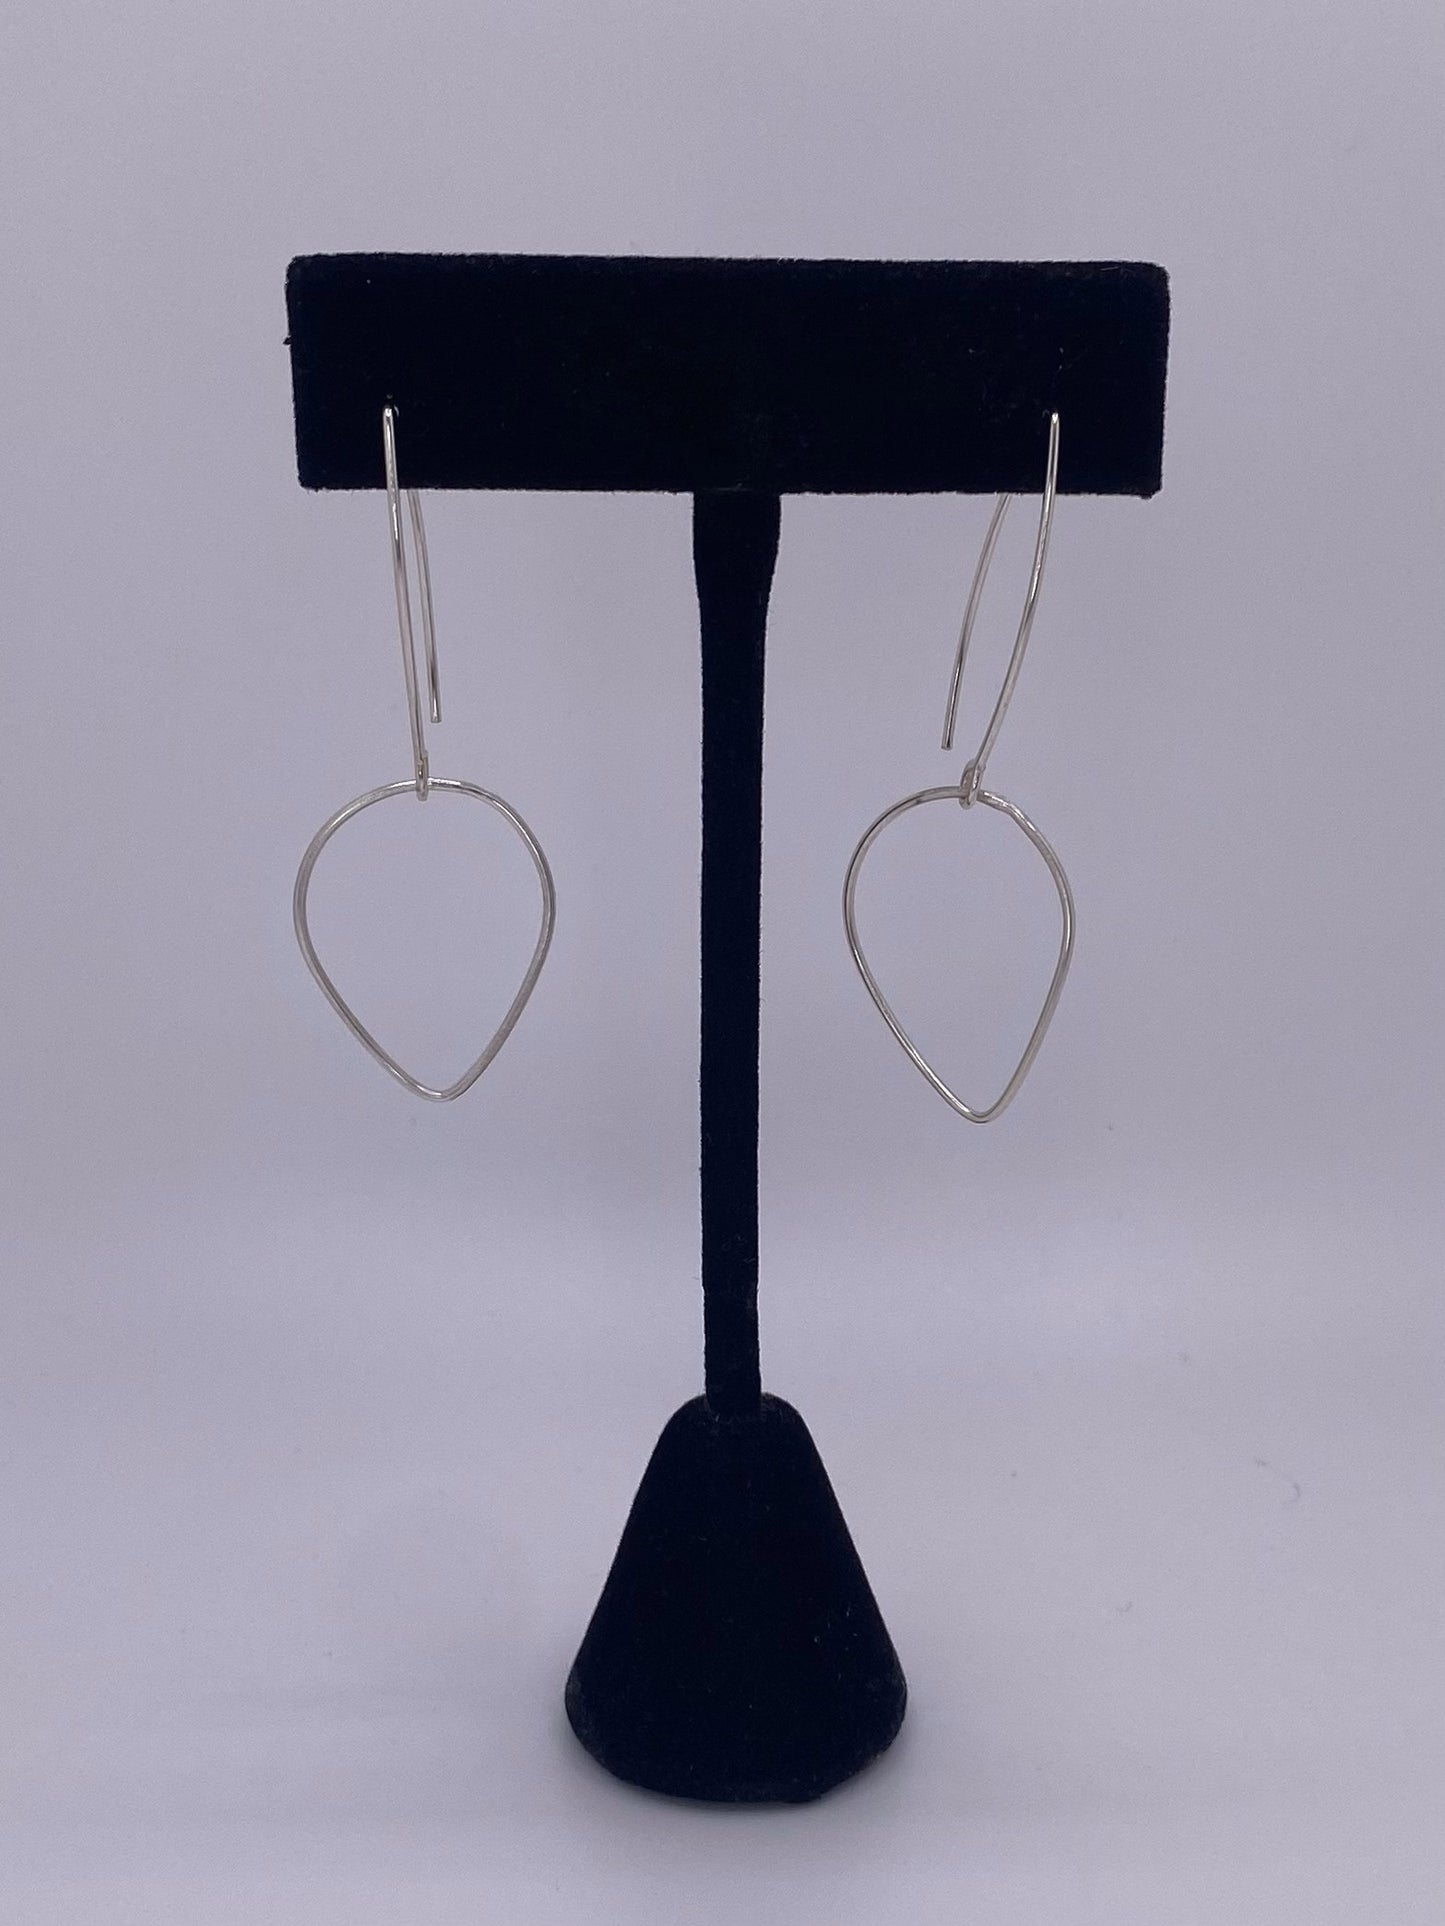 Teardrop Drop handmade Earrings in Sterling Silver